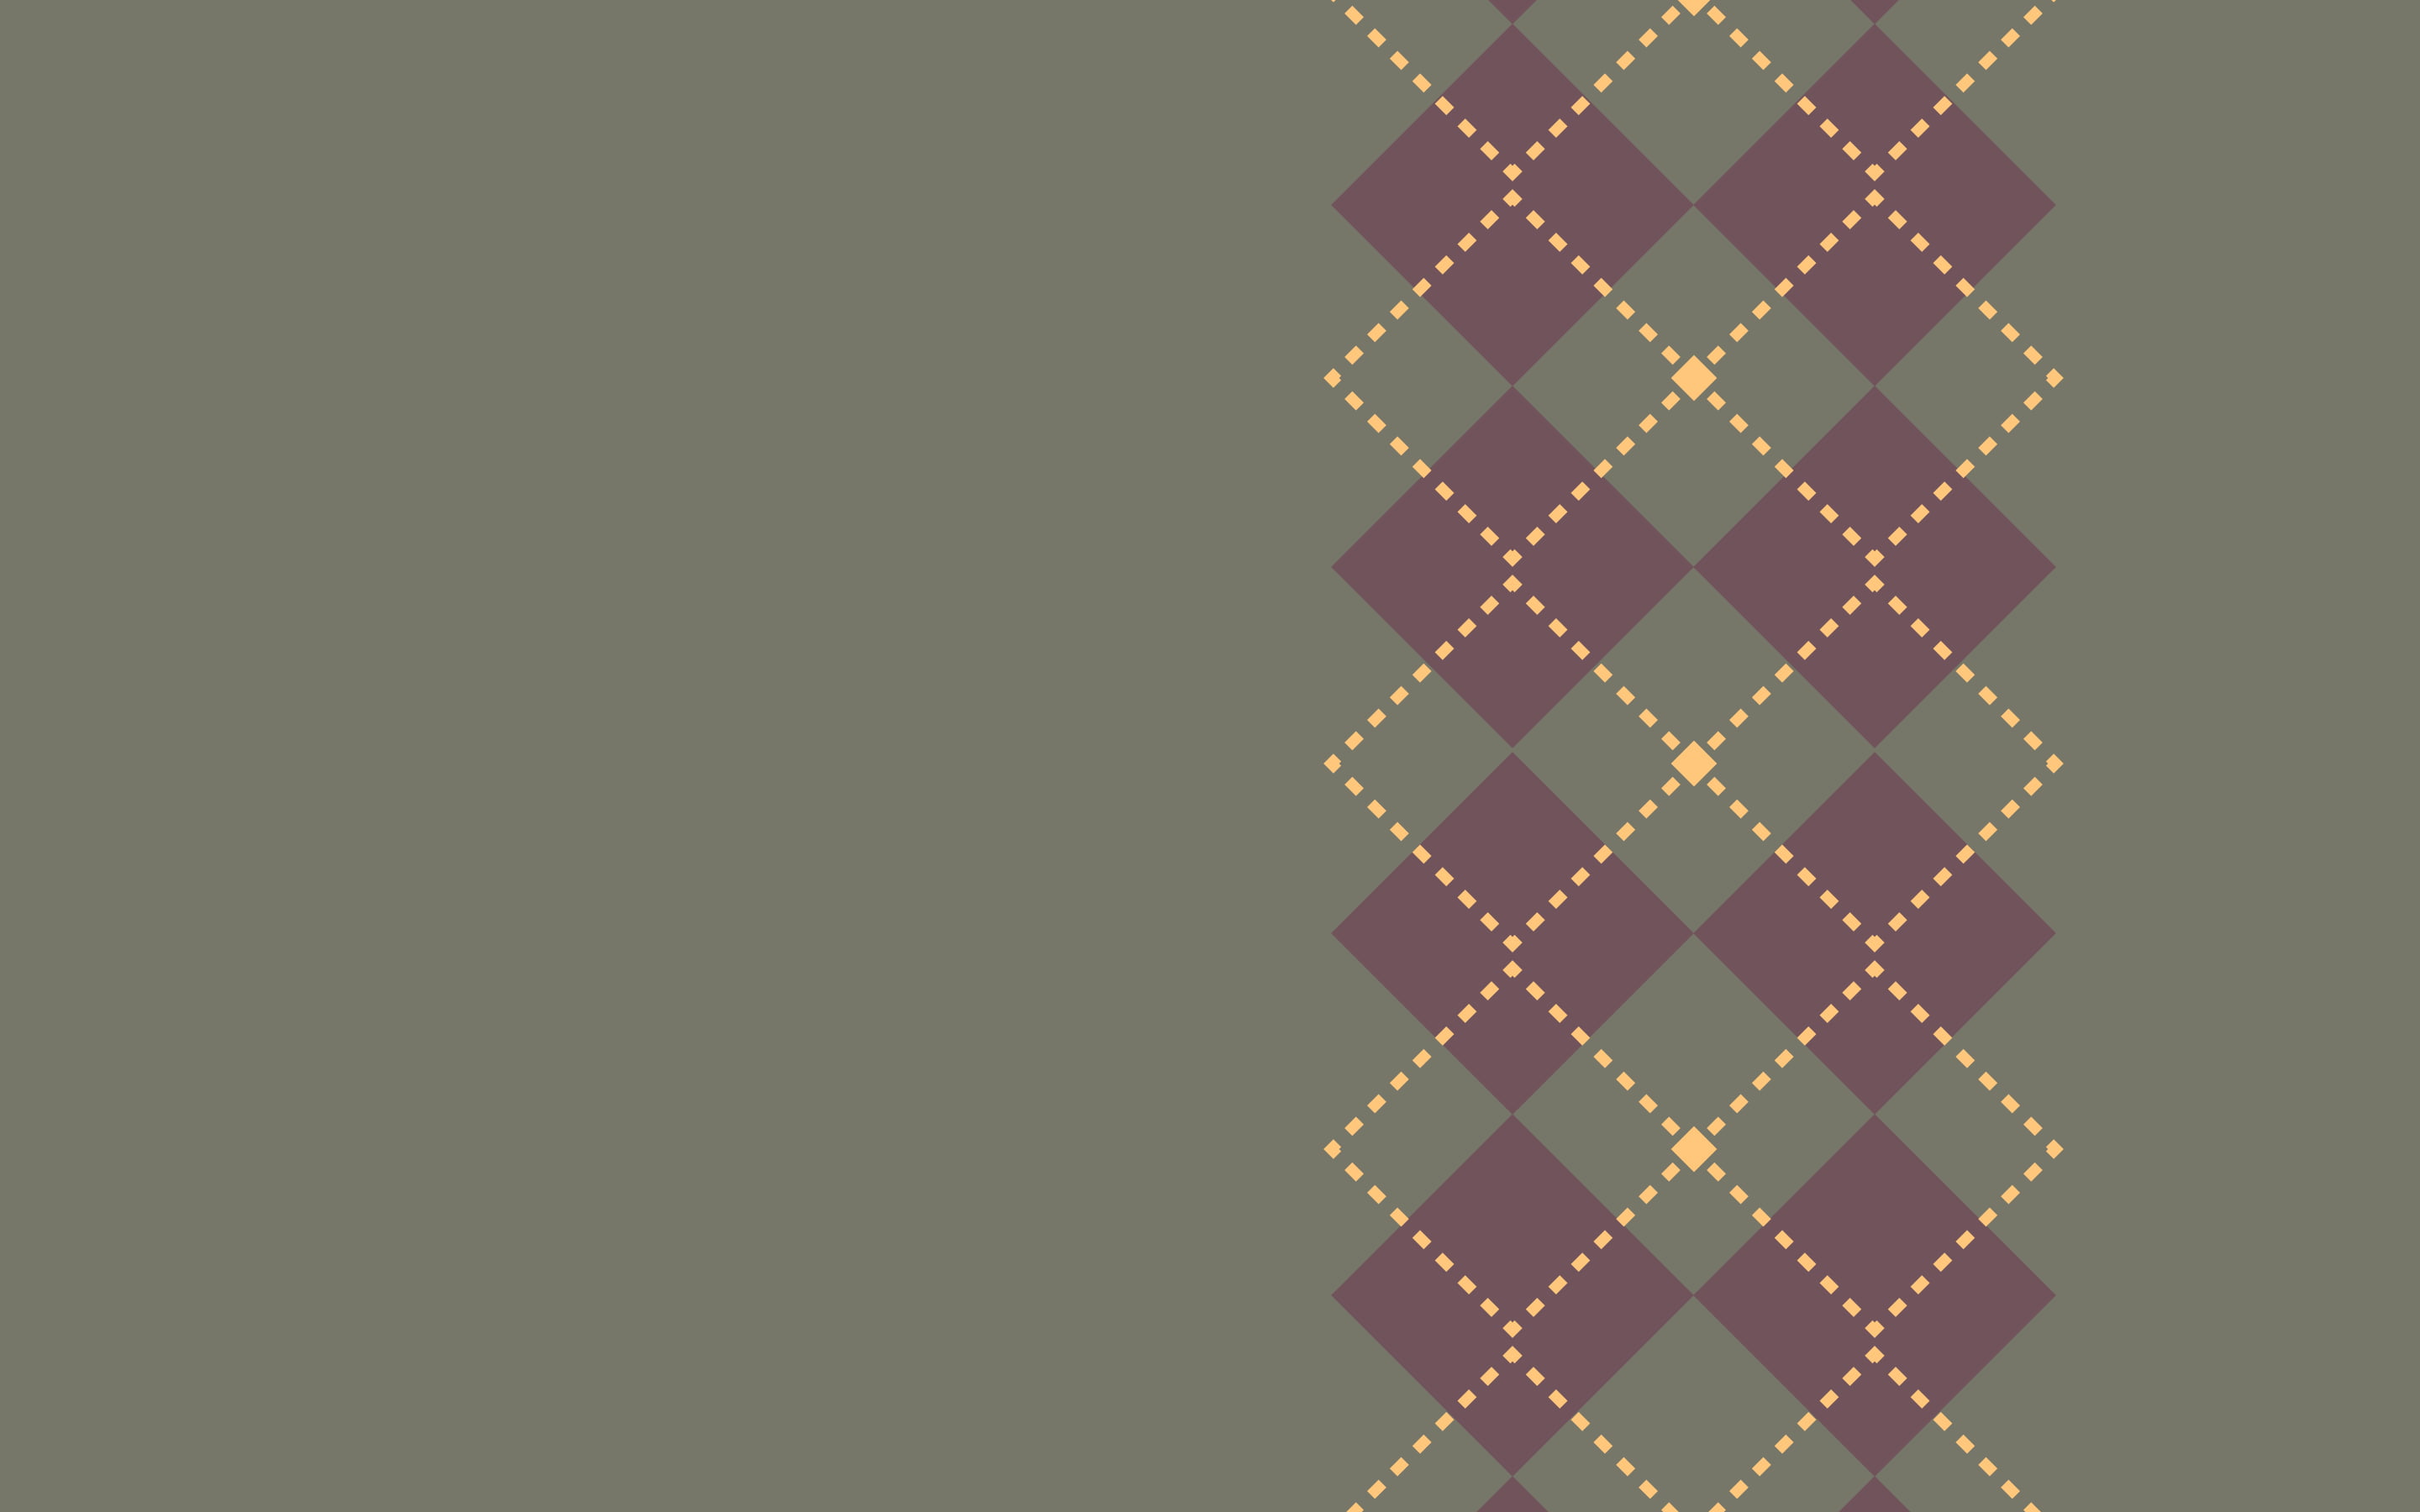 purple and gray argyle pattern, minimalism